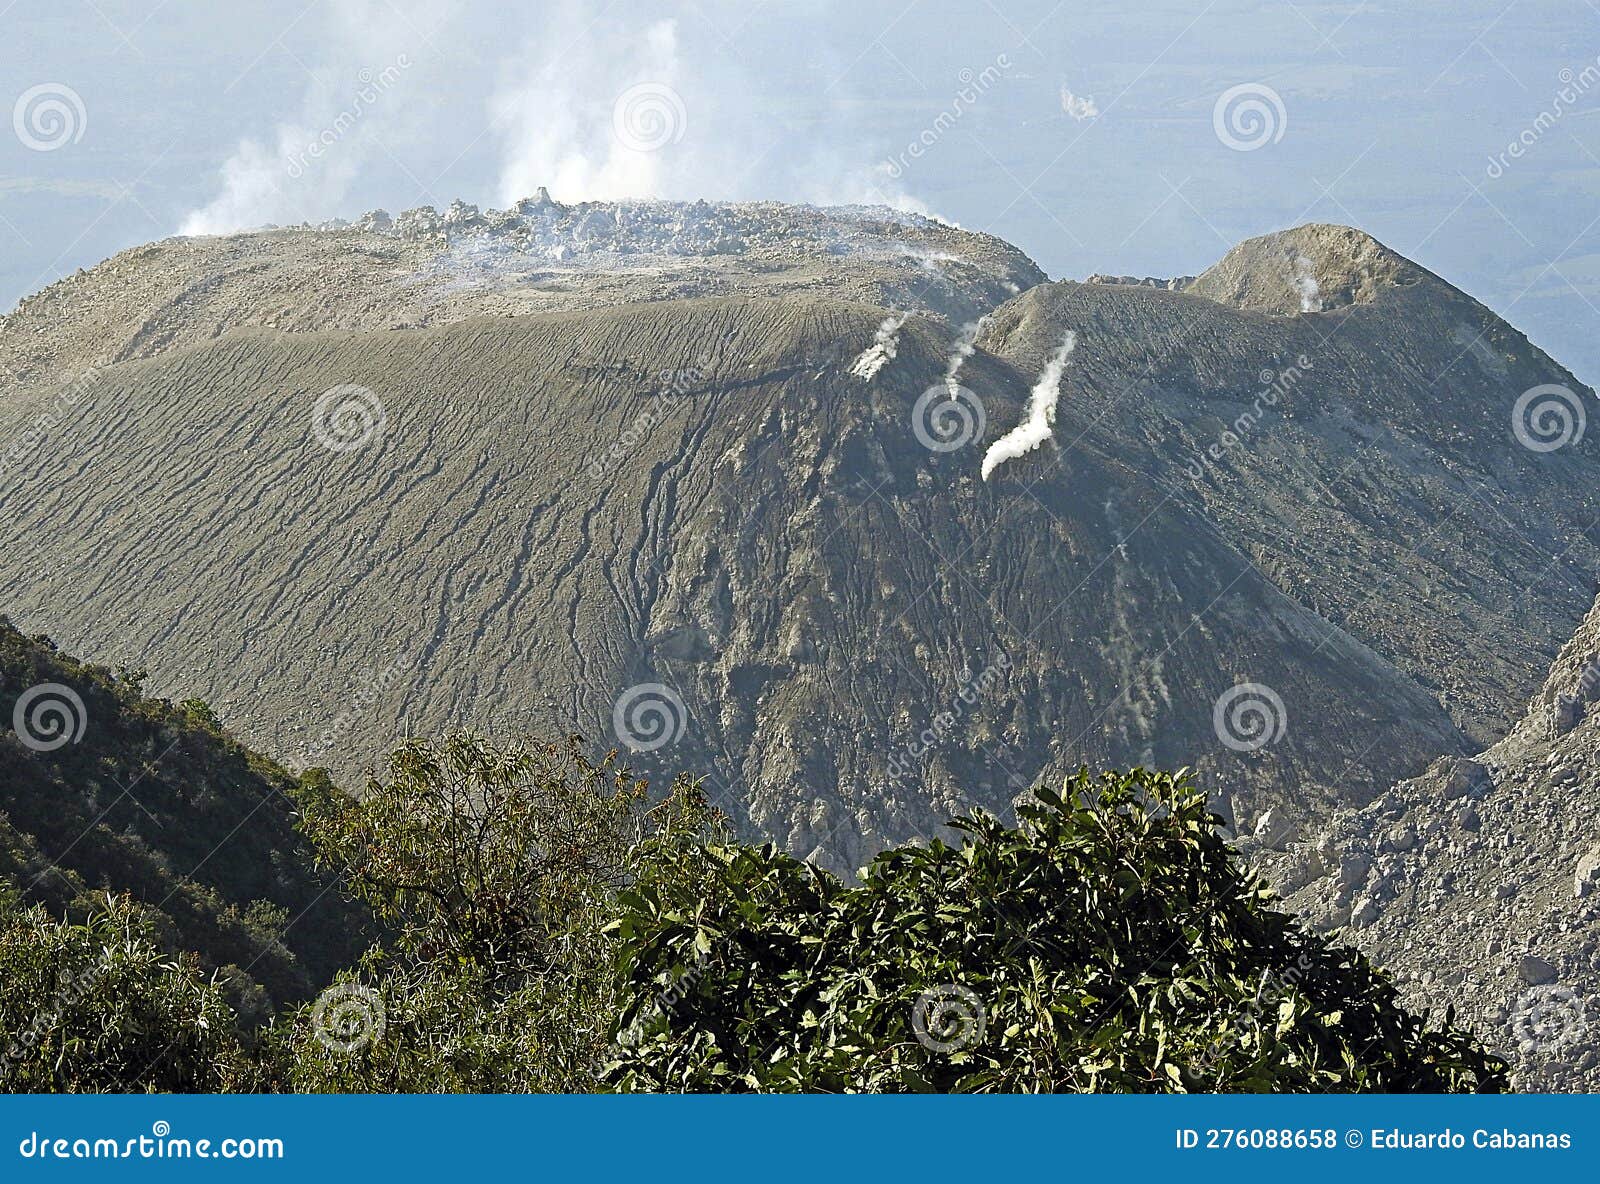 santiaguito volcano in quetzaltenango, guatemala